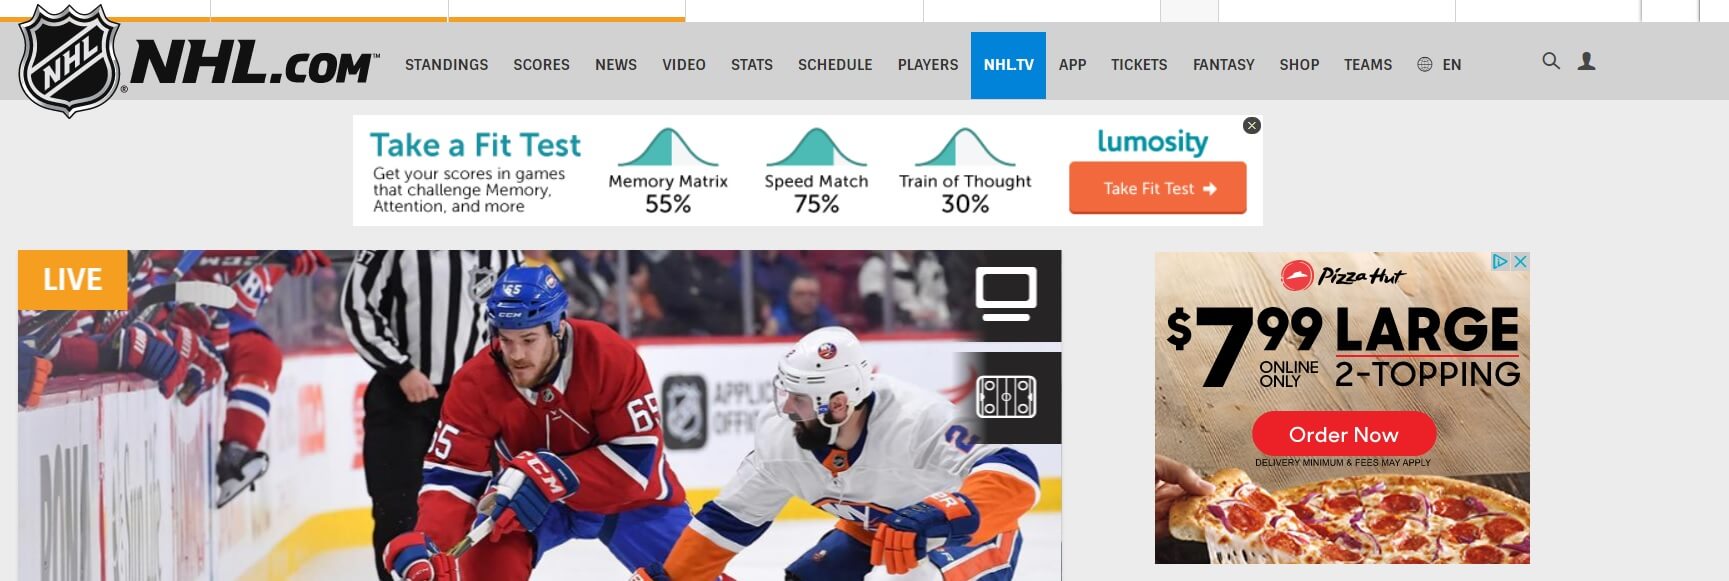 Exemplos de colocações de anúncios em destaque no site da NHL